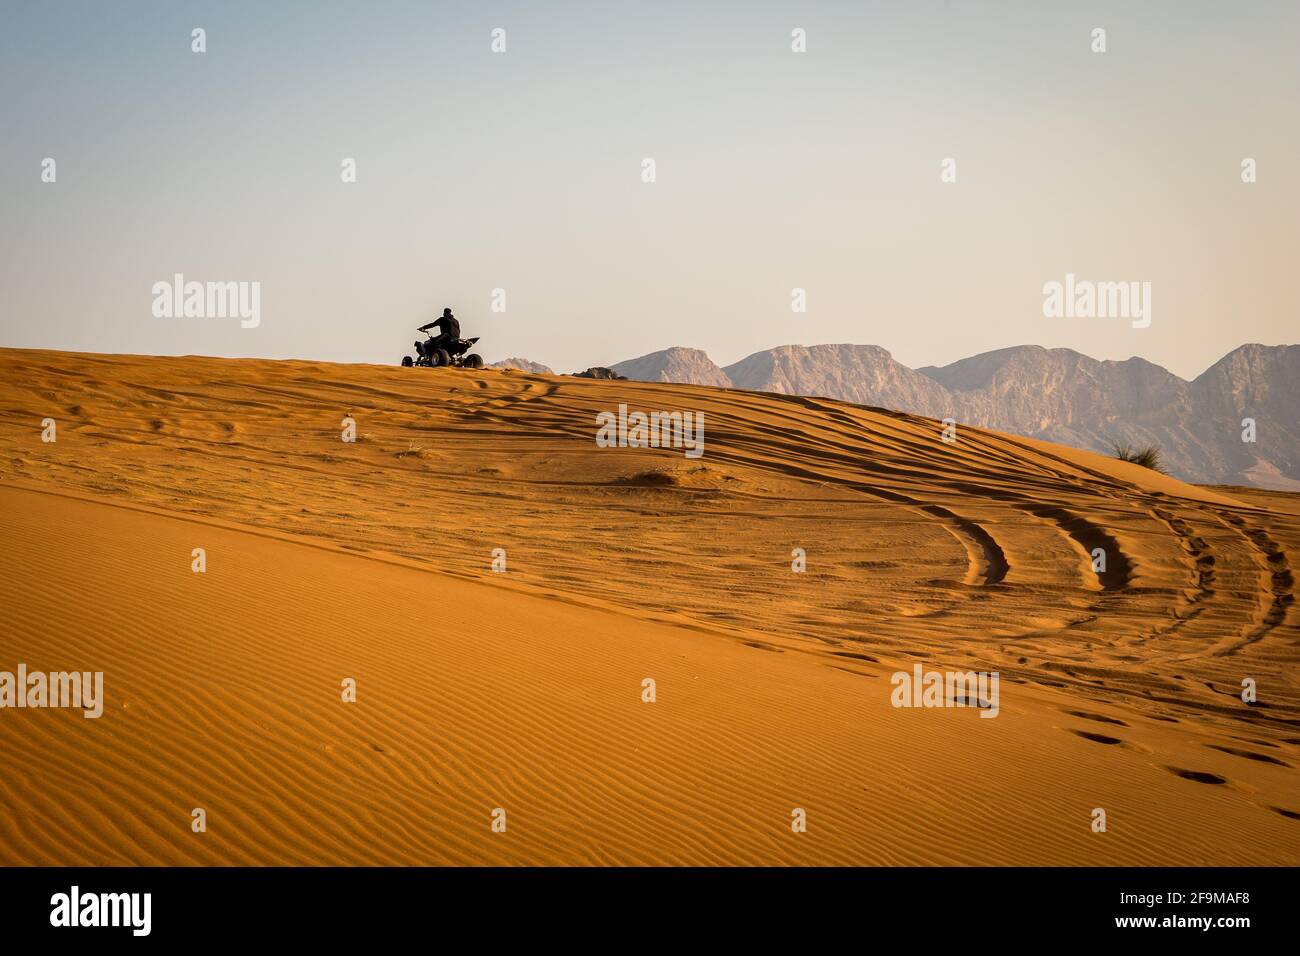 Silhouette di un quad che guida sulla duna di sabbia nel deserto, con le tracce di pneumatici dietro e le montagne sullo sfondo, tramonto, Fossil Rock, Sharjah, un Foto Stock